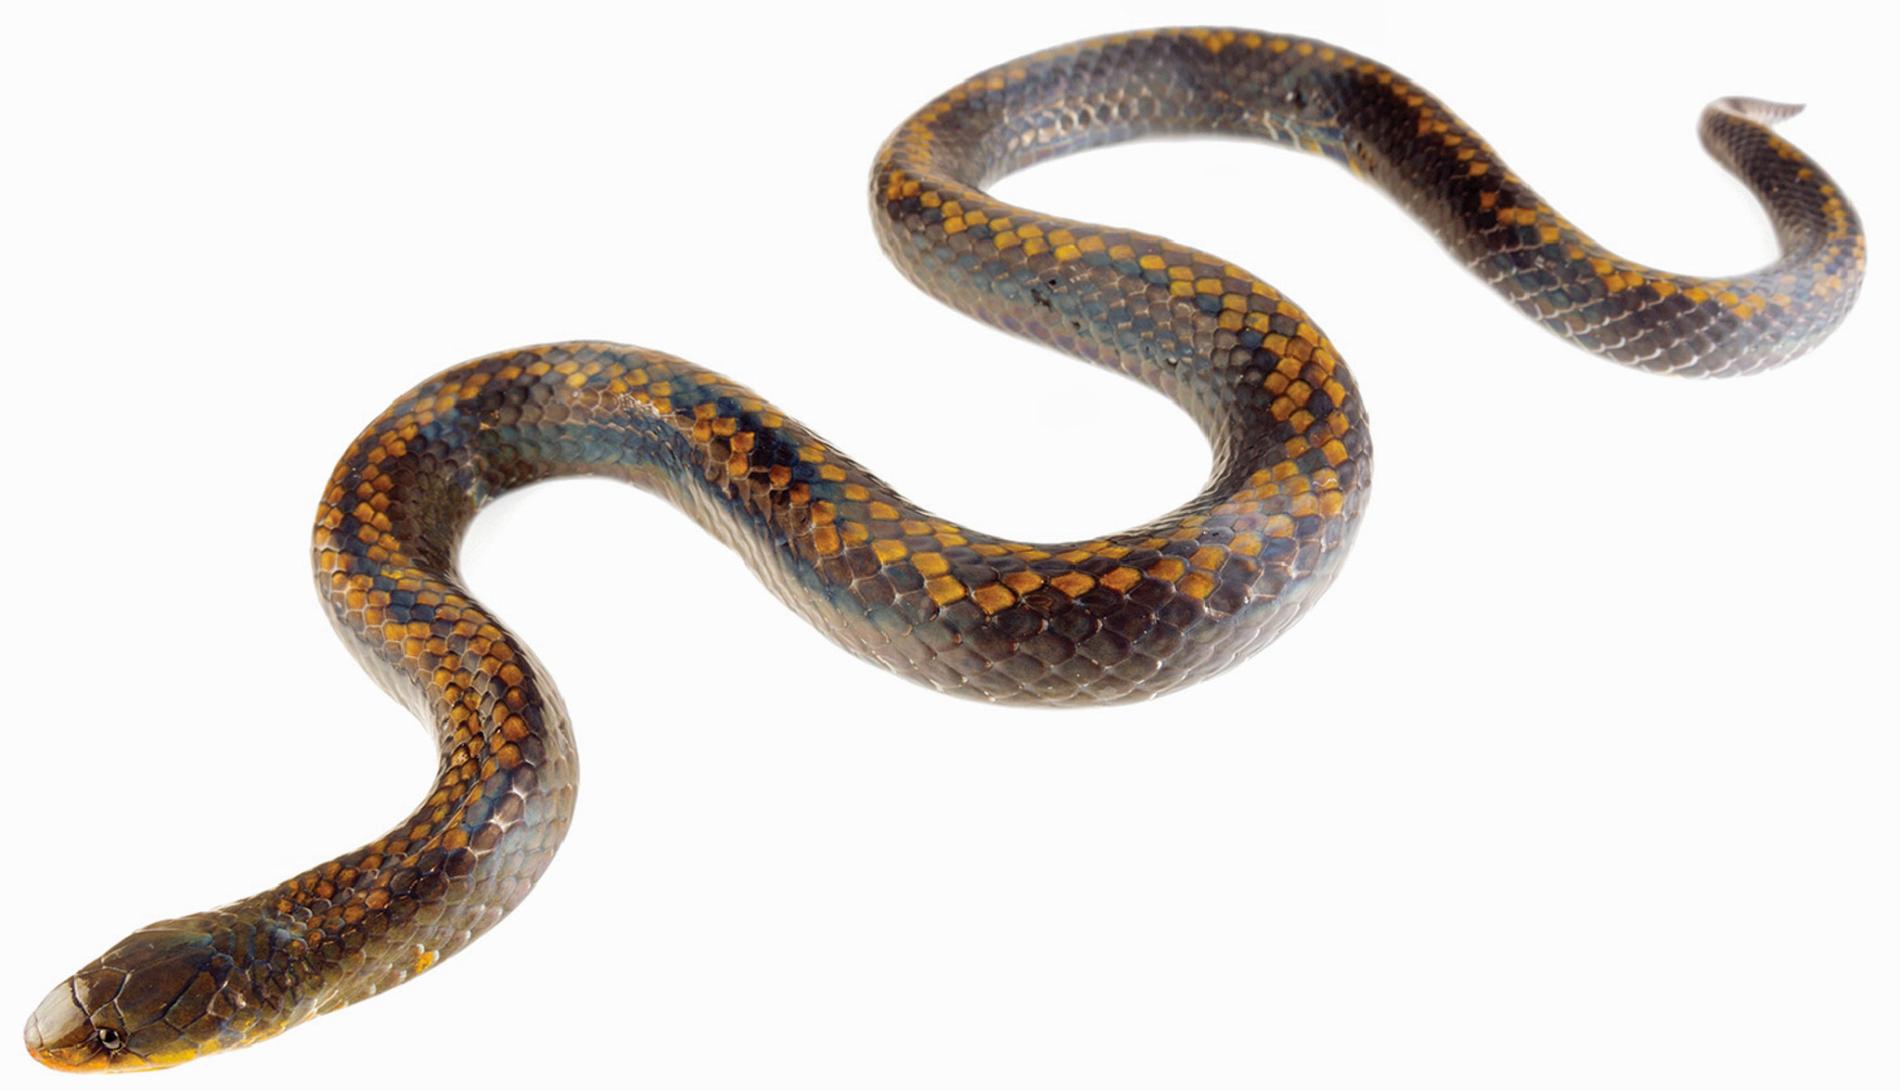 3 New Snakes Found, One Named for Underworld Monster